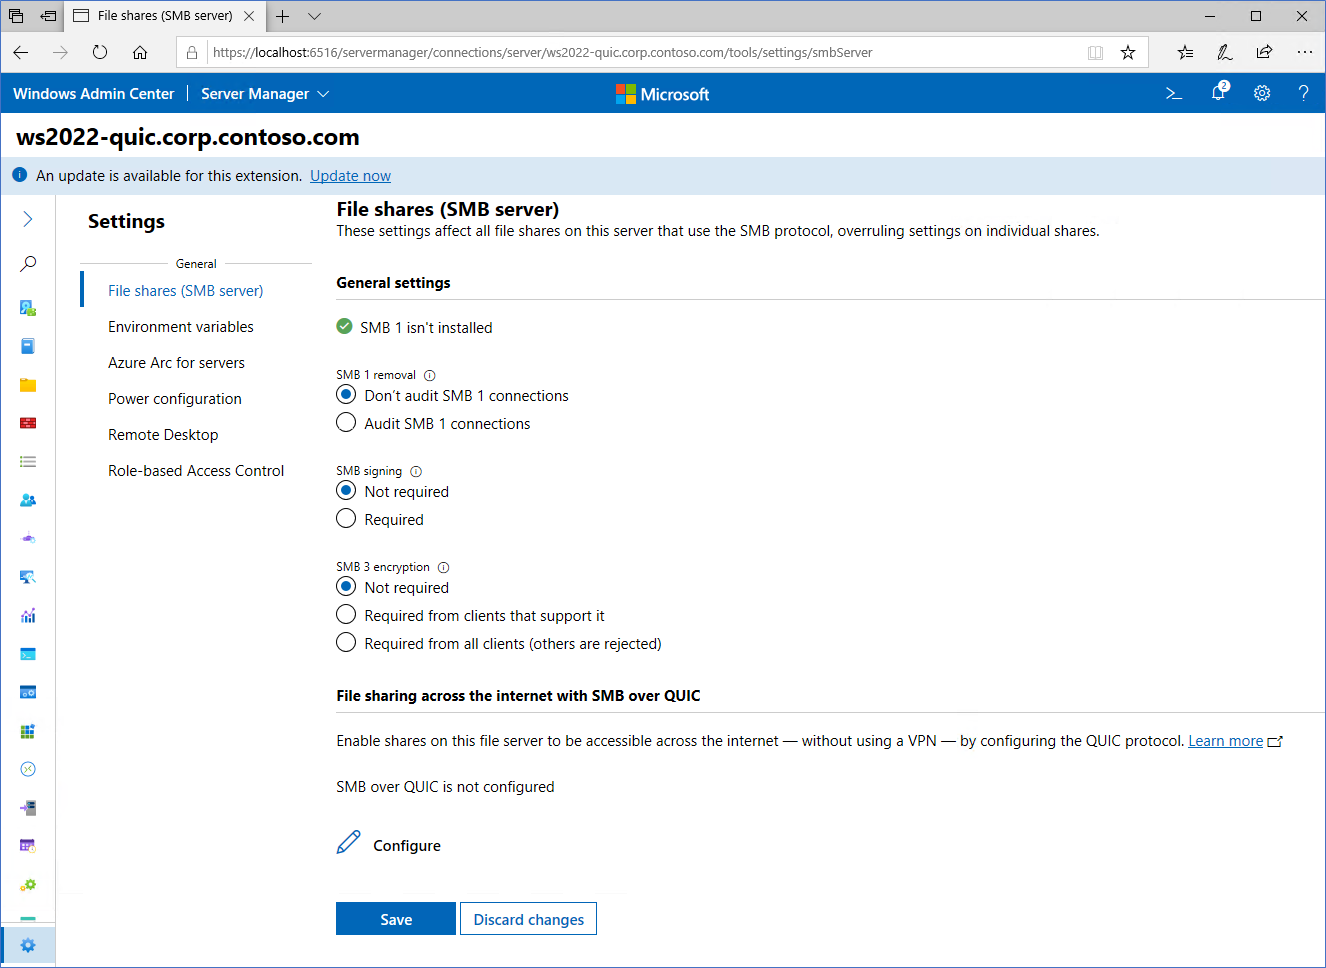 Gambar yang memperlihatkan layar konfigurasi untuk SMB melalui QUIC di Pusat Admin Windows